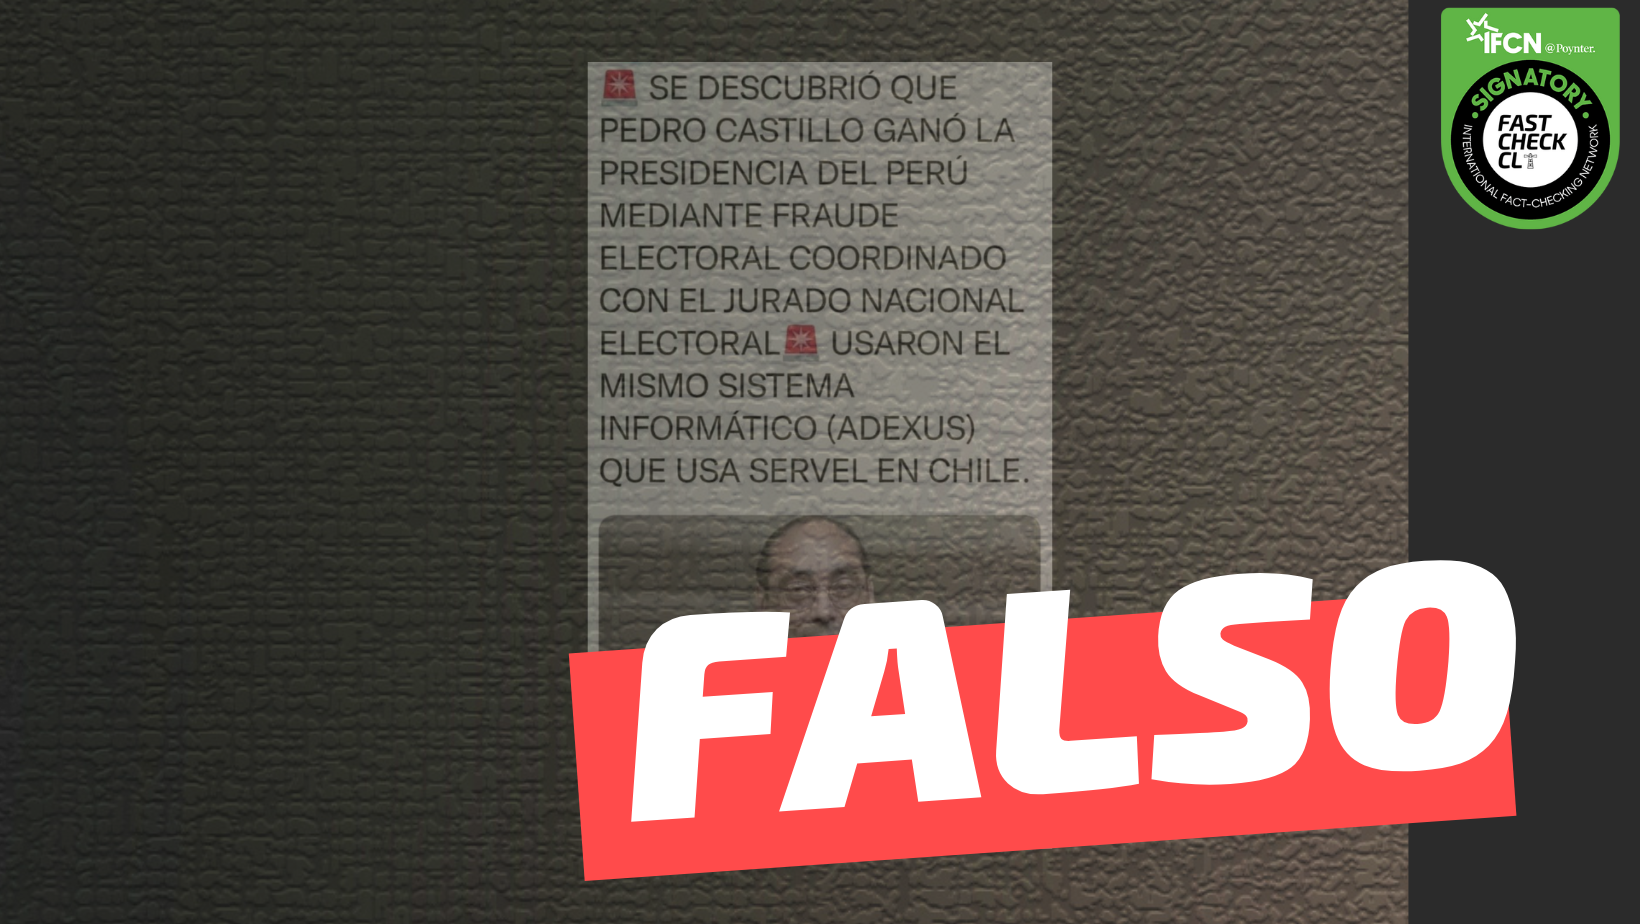 You are currently viewing “Se descrubrió que Pedro Castillo ganó la presidencia del Perú mediante fraude electoral coordinado con el Jurado Nacional. Usaron el mismo sistema informático (Adexus) que usa el Servel en Chile”: #Falso